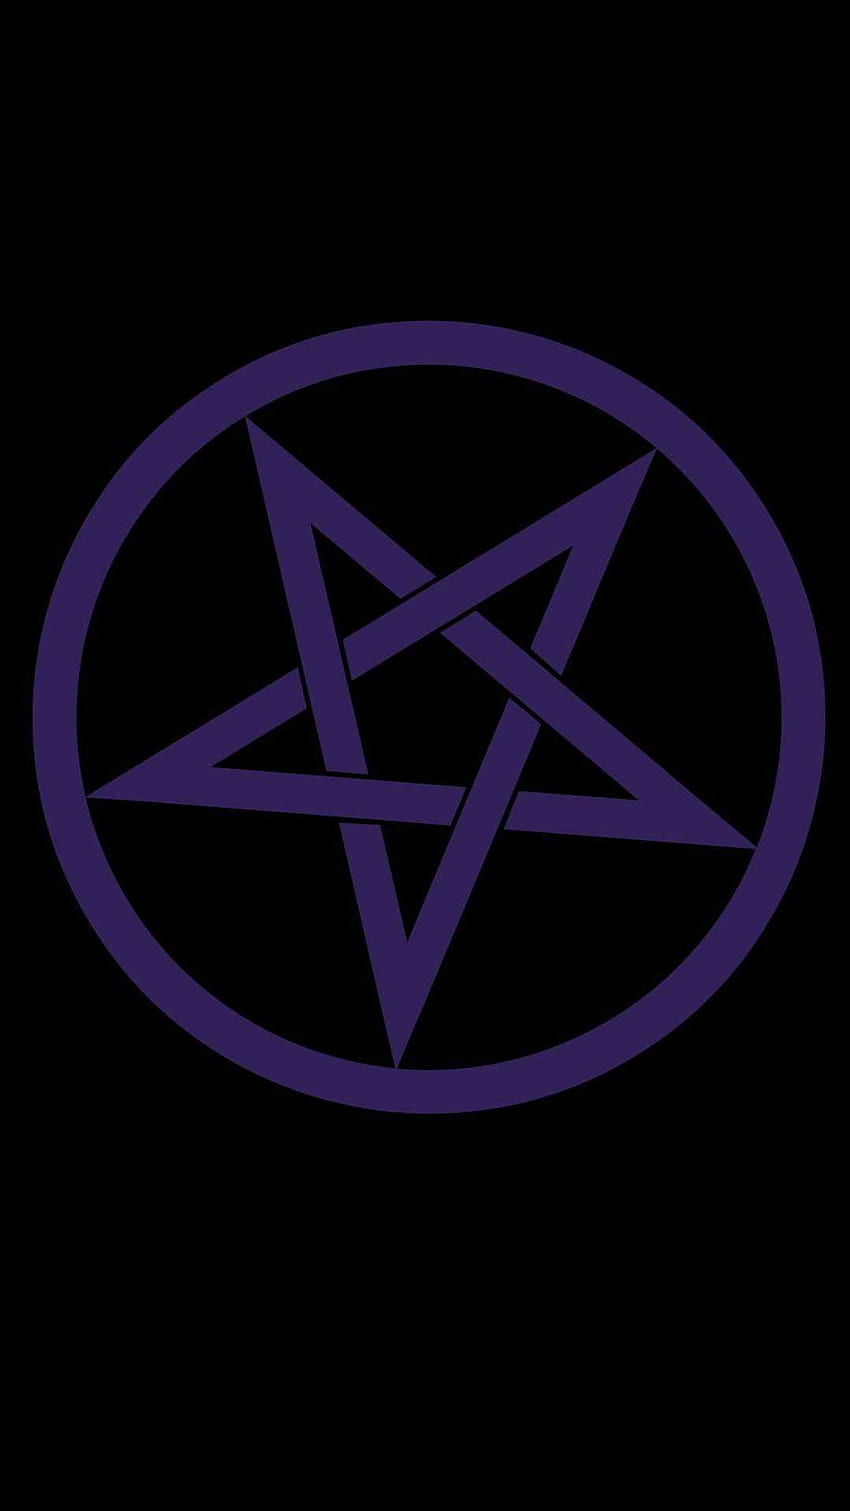 Pentagram Descubra más Pagan, Pentacle, Pentagram, Wicca, Wiccan. 88835 Pendiente. Wiccan, pentagrama fondo de pantalla del teléfono